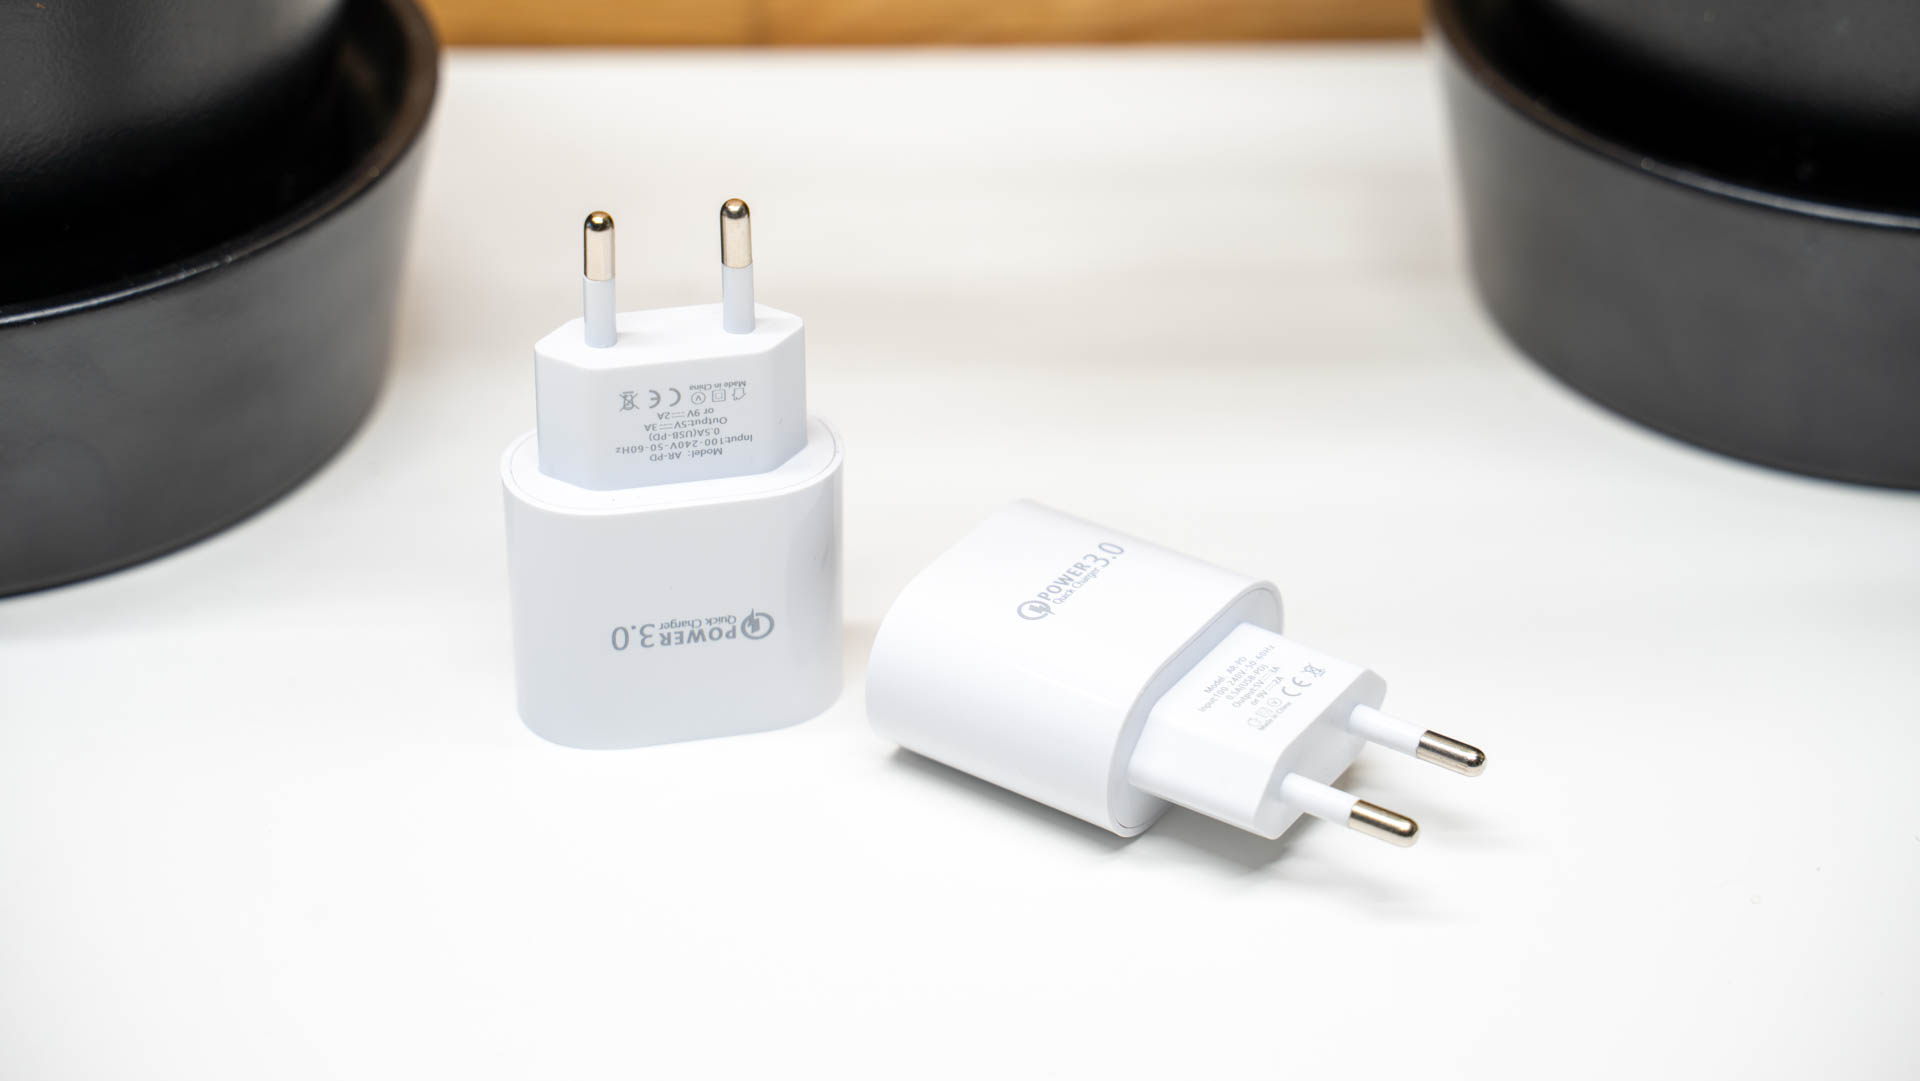 Fake Apple 18W USB Ladegeräte für 2,68€?! Gut? - Techtest